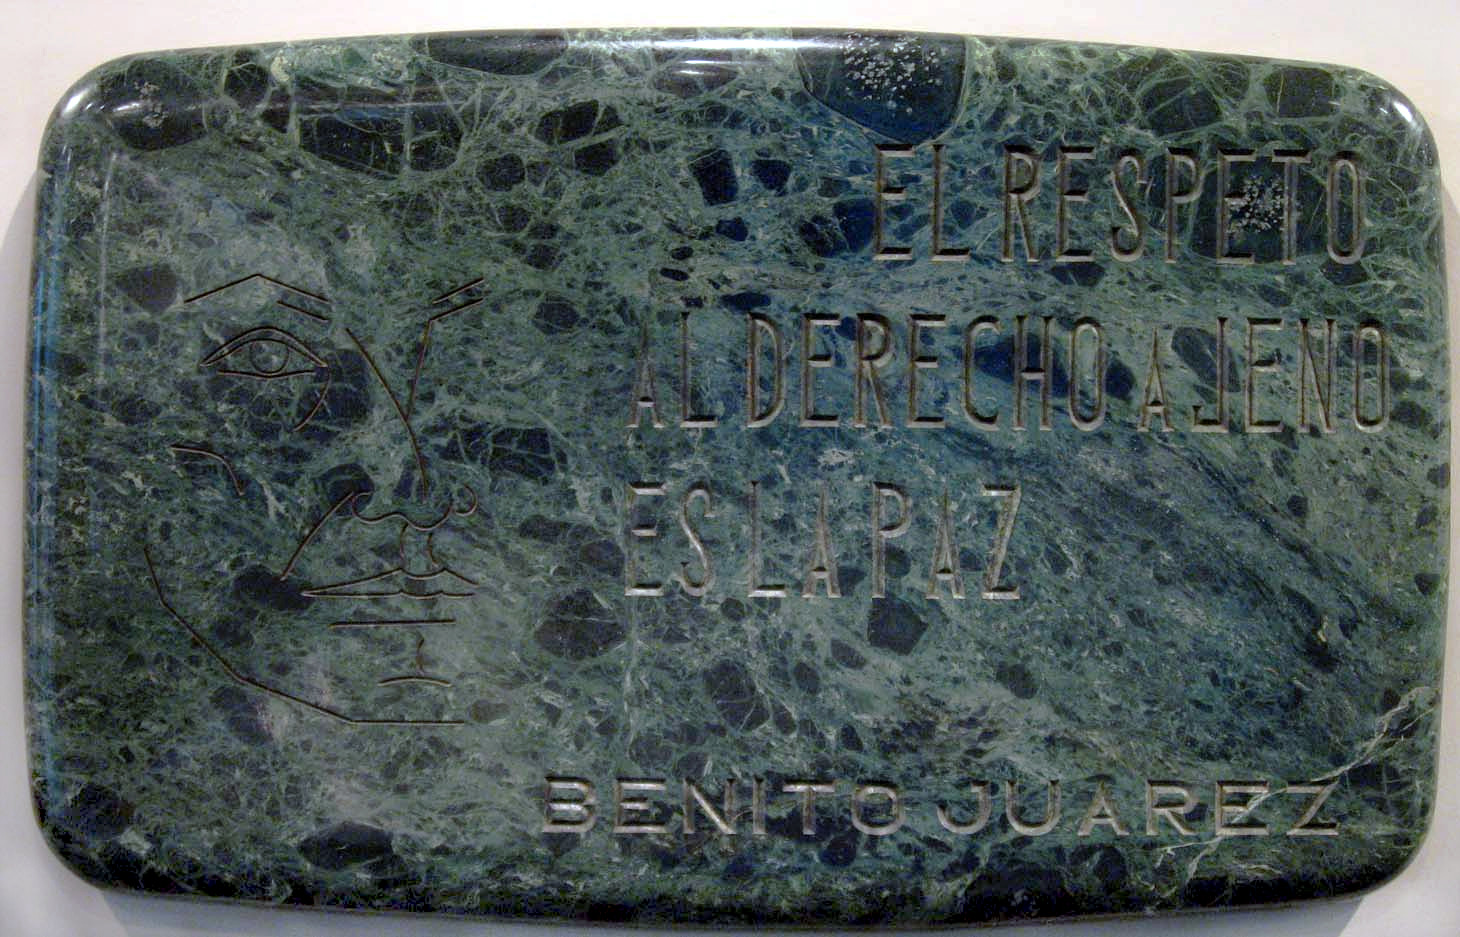 Placa de mármol dedicada a Benito Juárez, UNNY103G, 1973, Grupo de América Latina